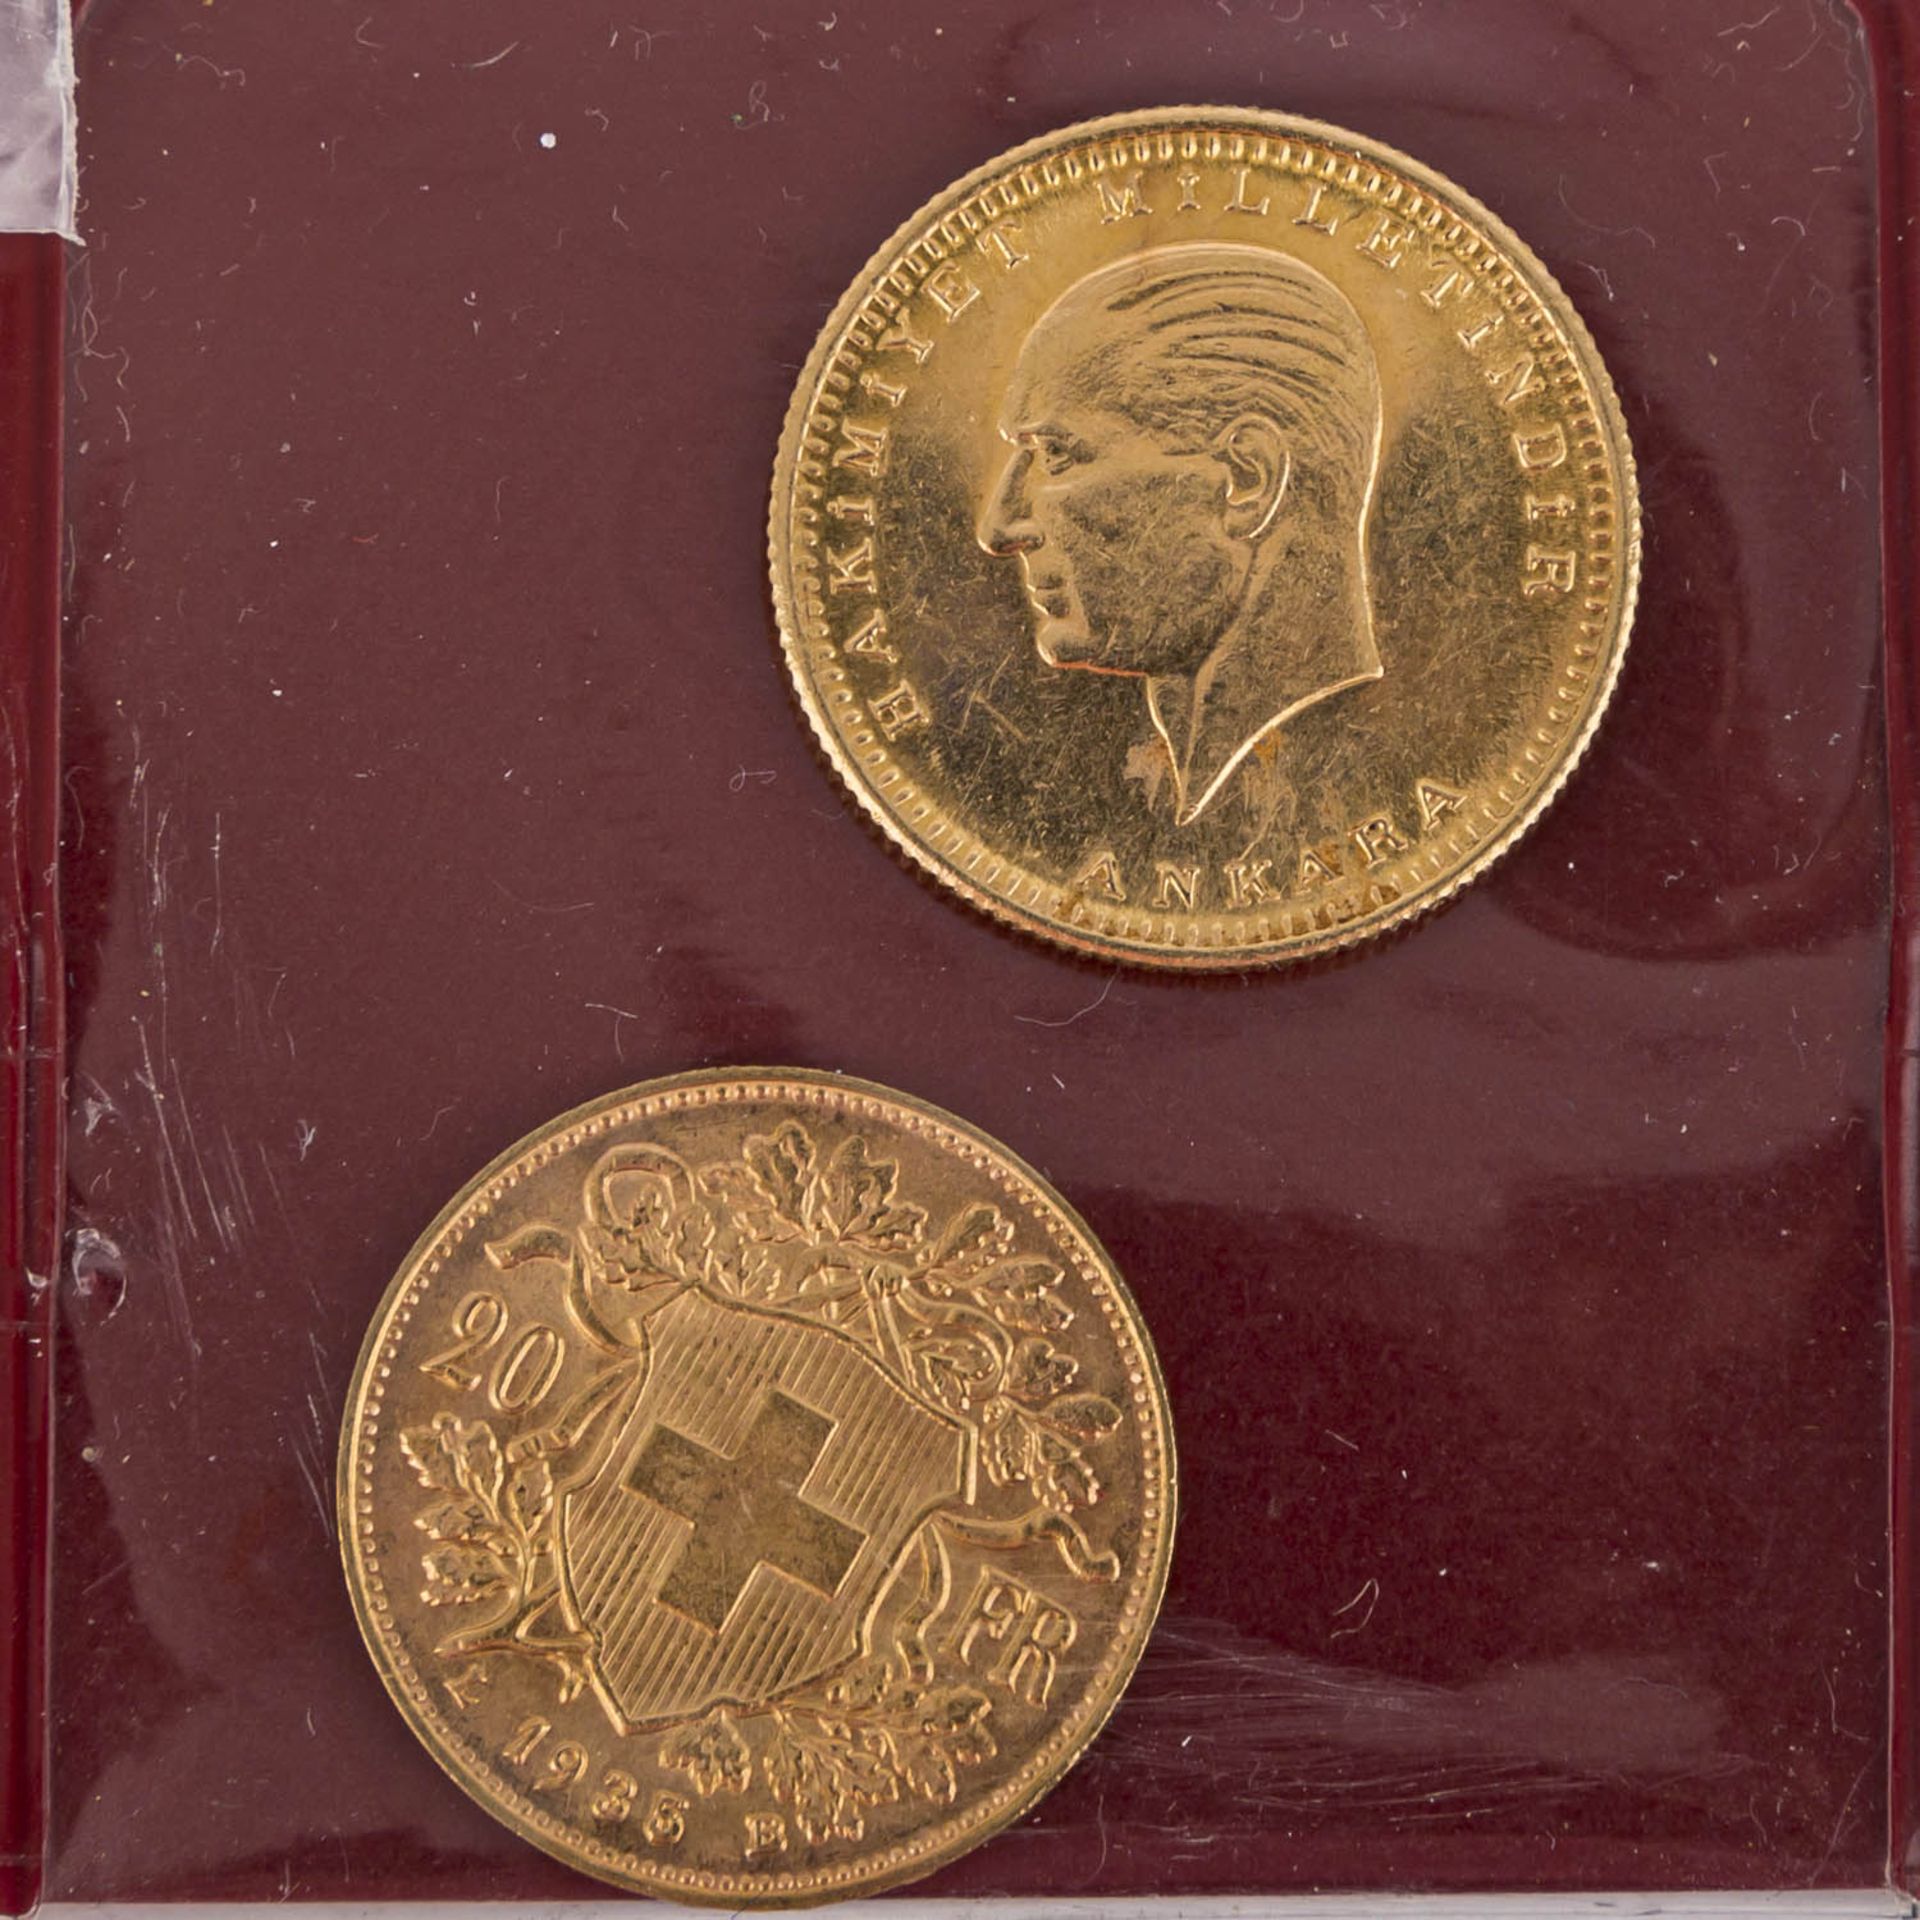 Gemischtes Lot mit Silber und etwas GOLDin Form von Schweuz 20 Franken Vreneli 1935 LB und Türkei - Bild 5 aus 13